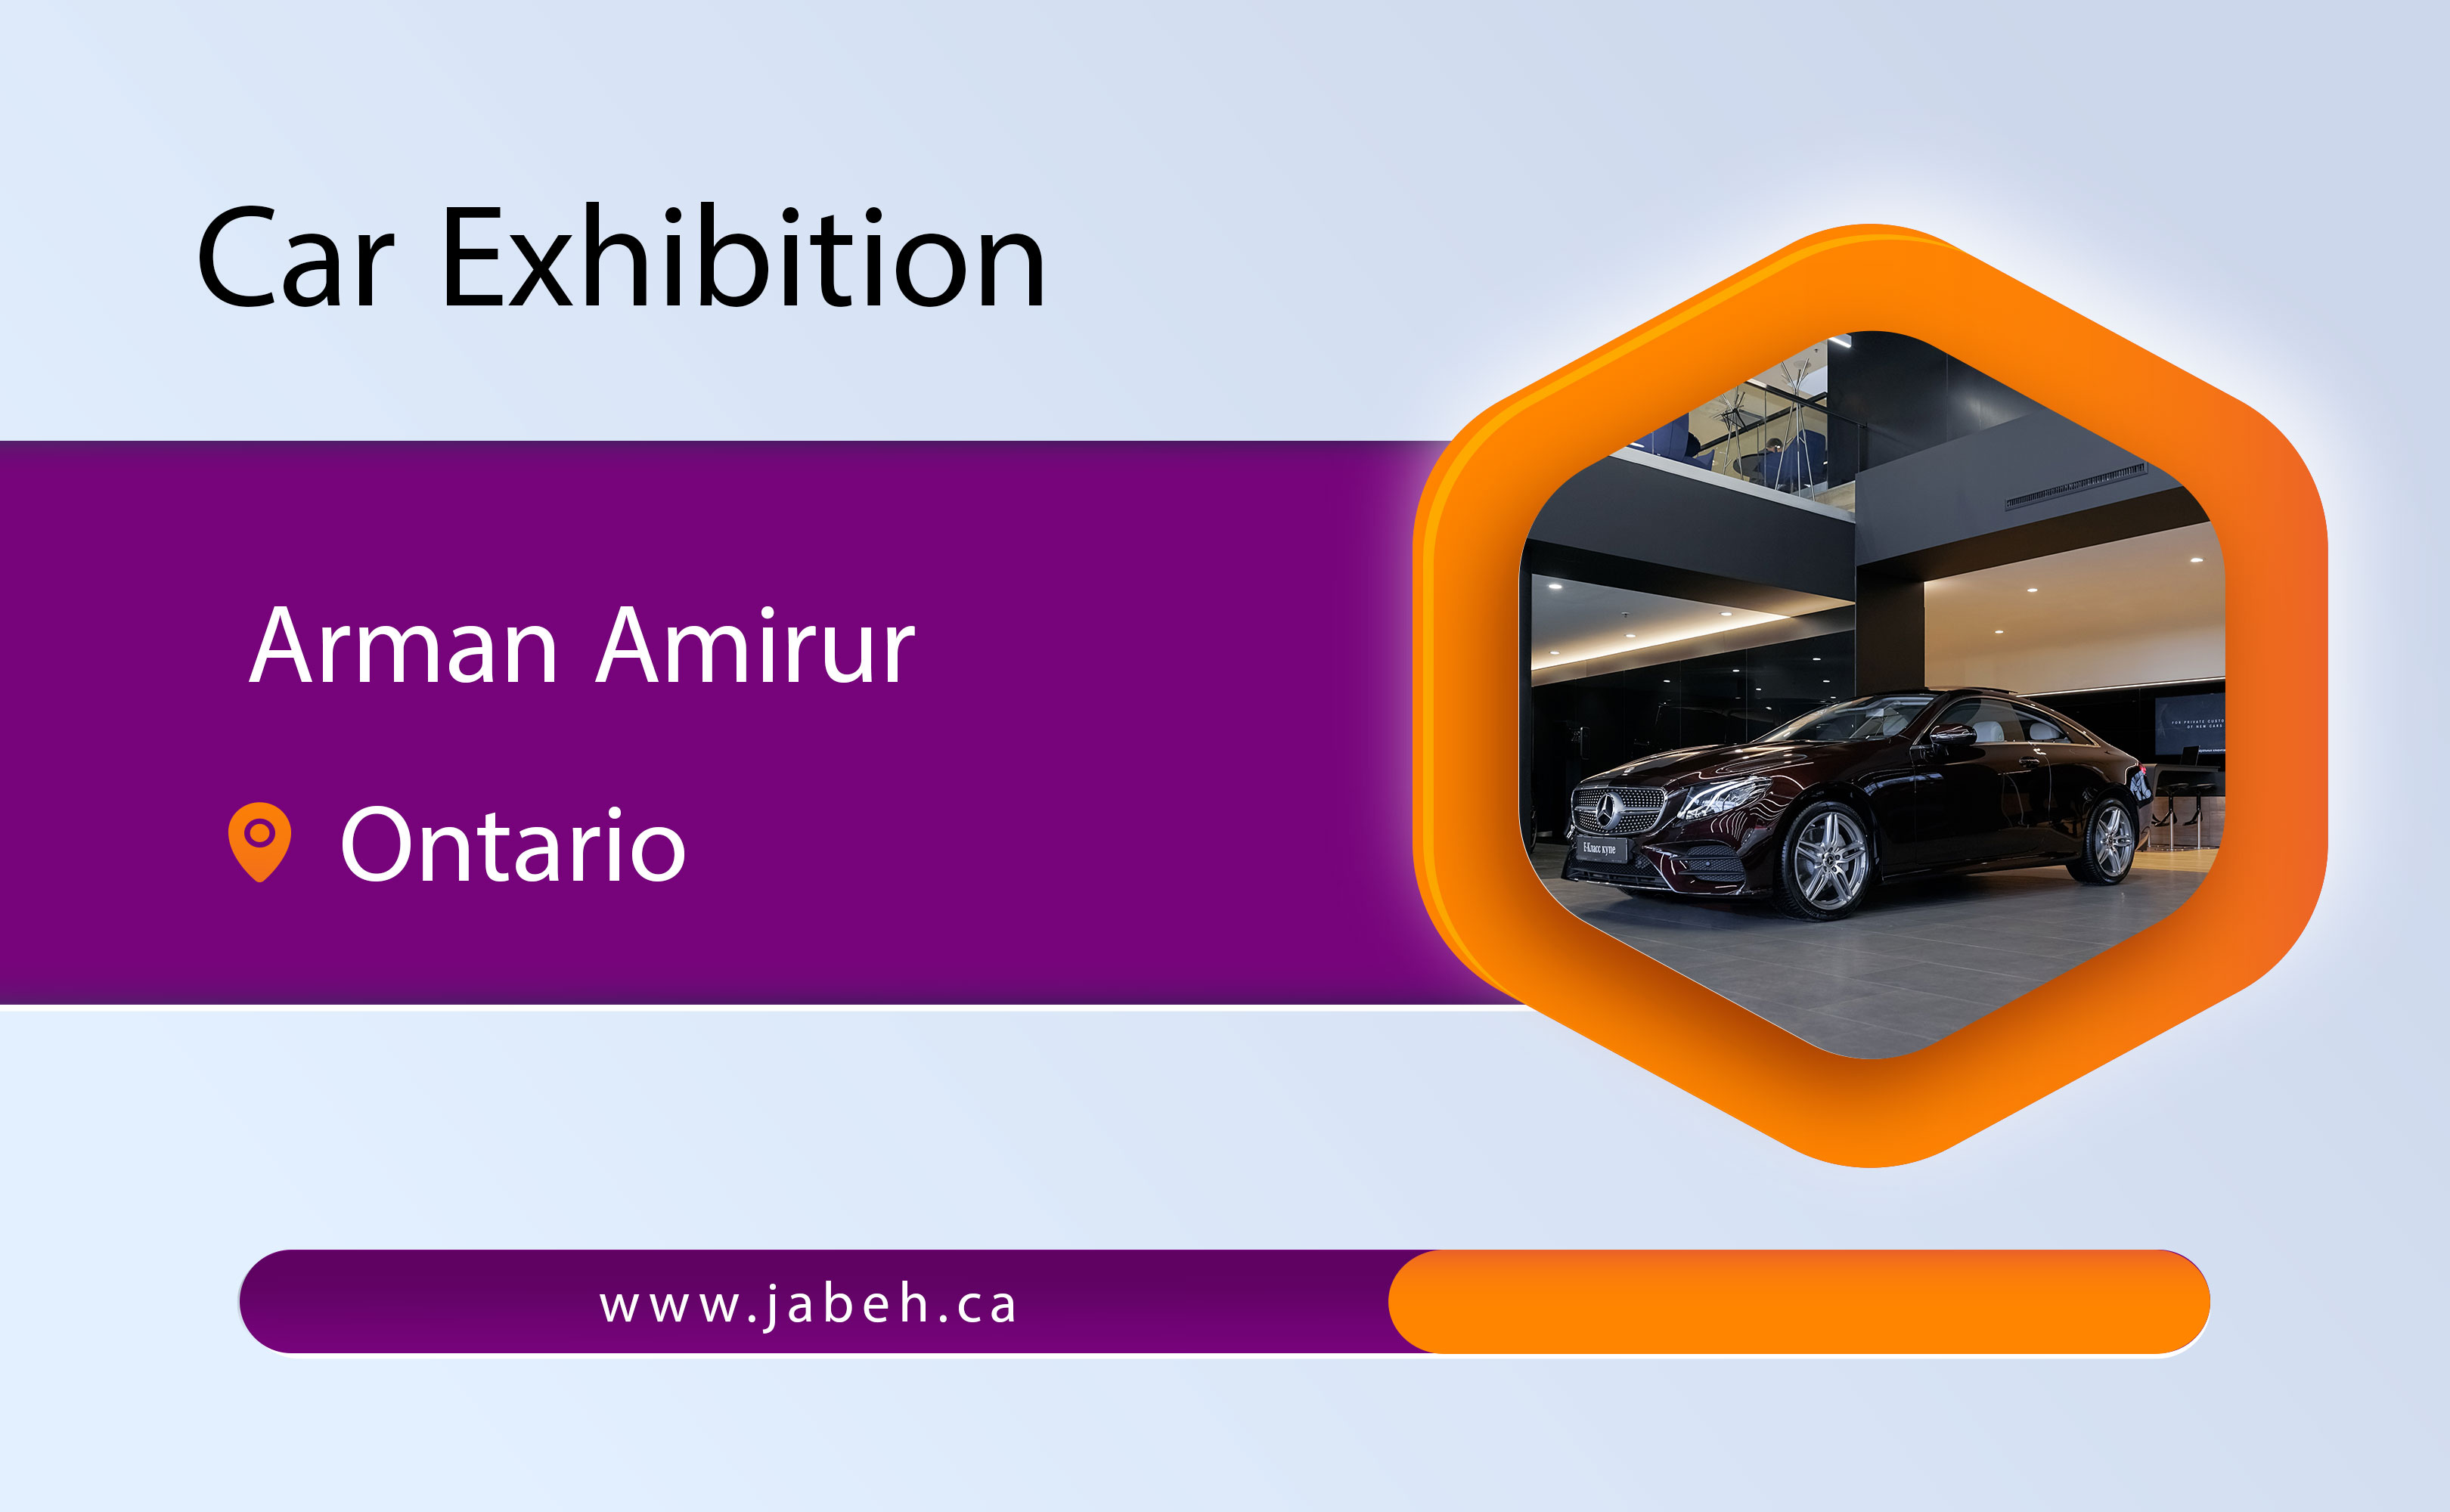 Arman Amiror car exhibition in Ontario